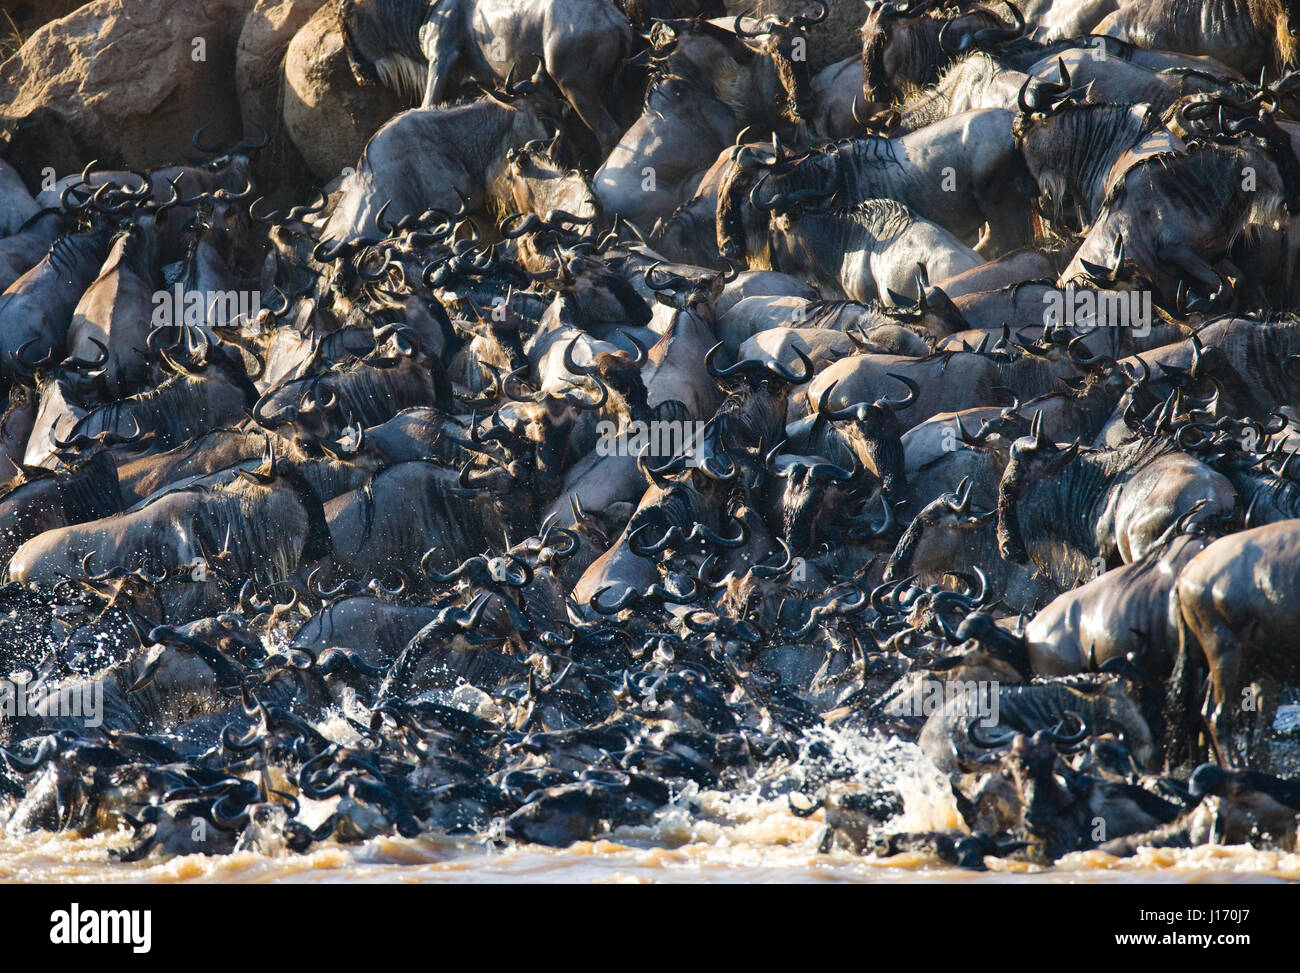 Die große Herde von Gnus geht um den Mara River. Hervorragende Migration. Kenia. Tansania. Masai Mara Nationalpark. Stockfoto